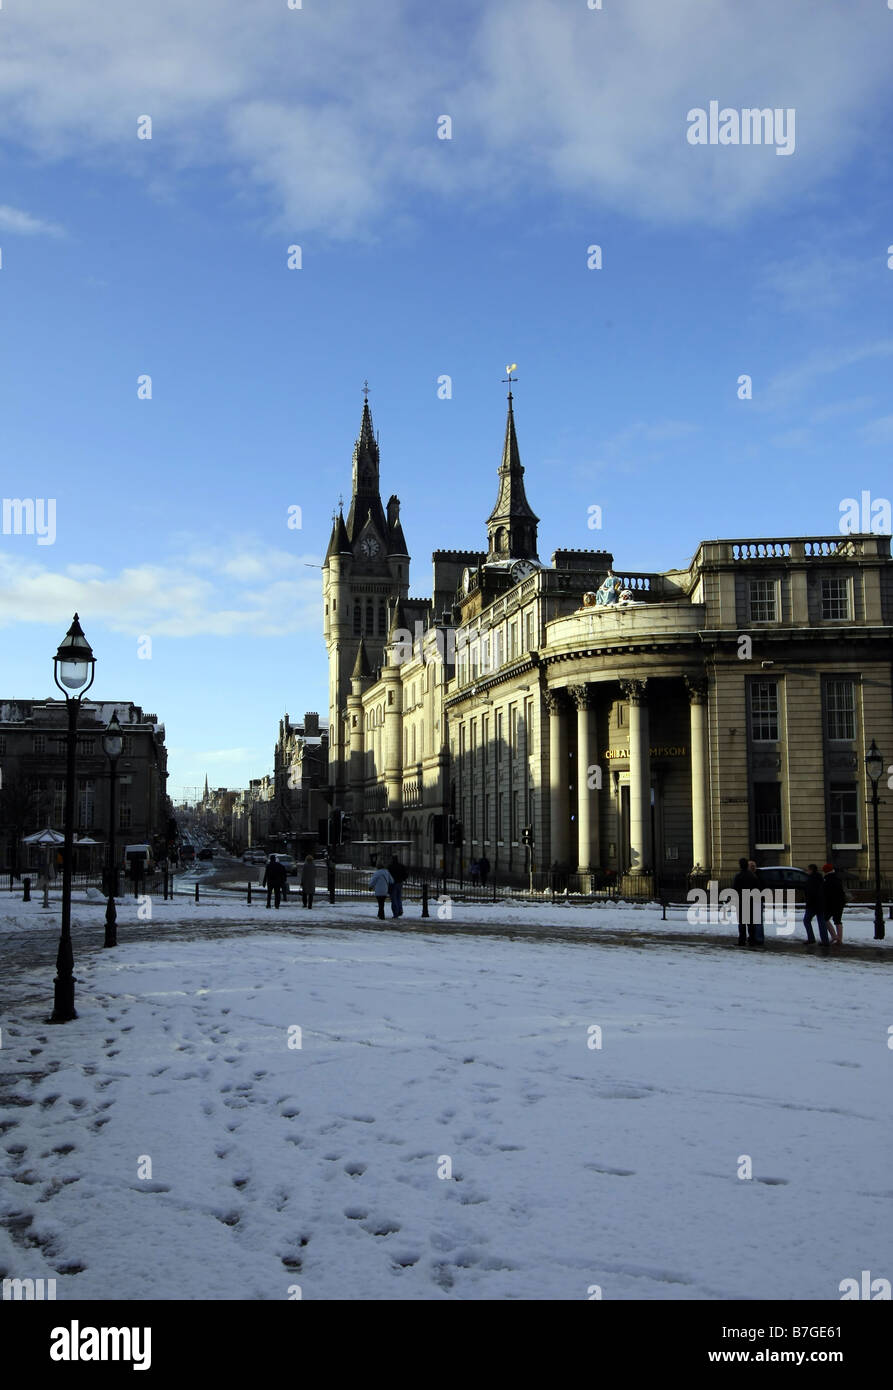 Castlegate à Aberdeen, Écosse, Royaume-Uni, couvert de neige en hiver. La maison de ville et Union Street vu dans l'arrière-plan Banque D'Images